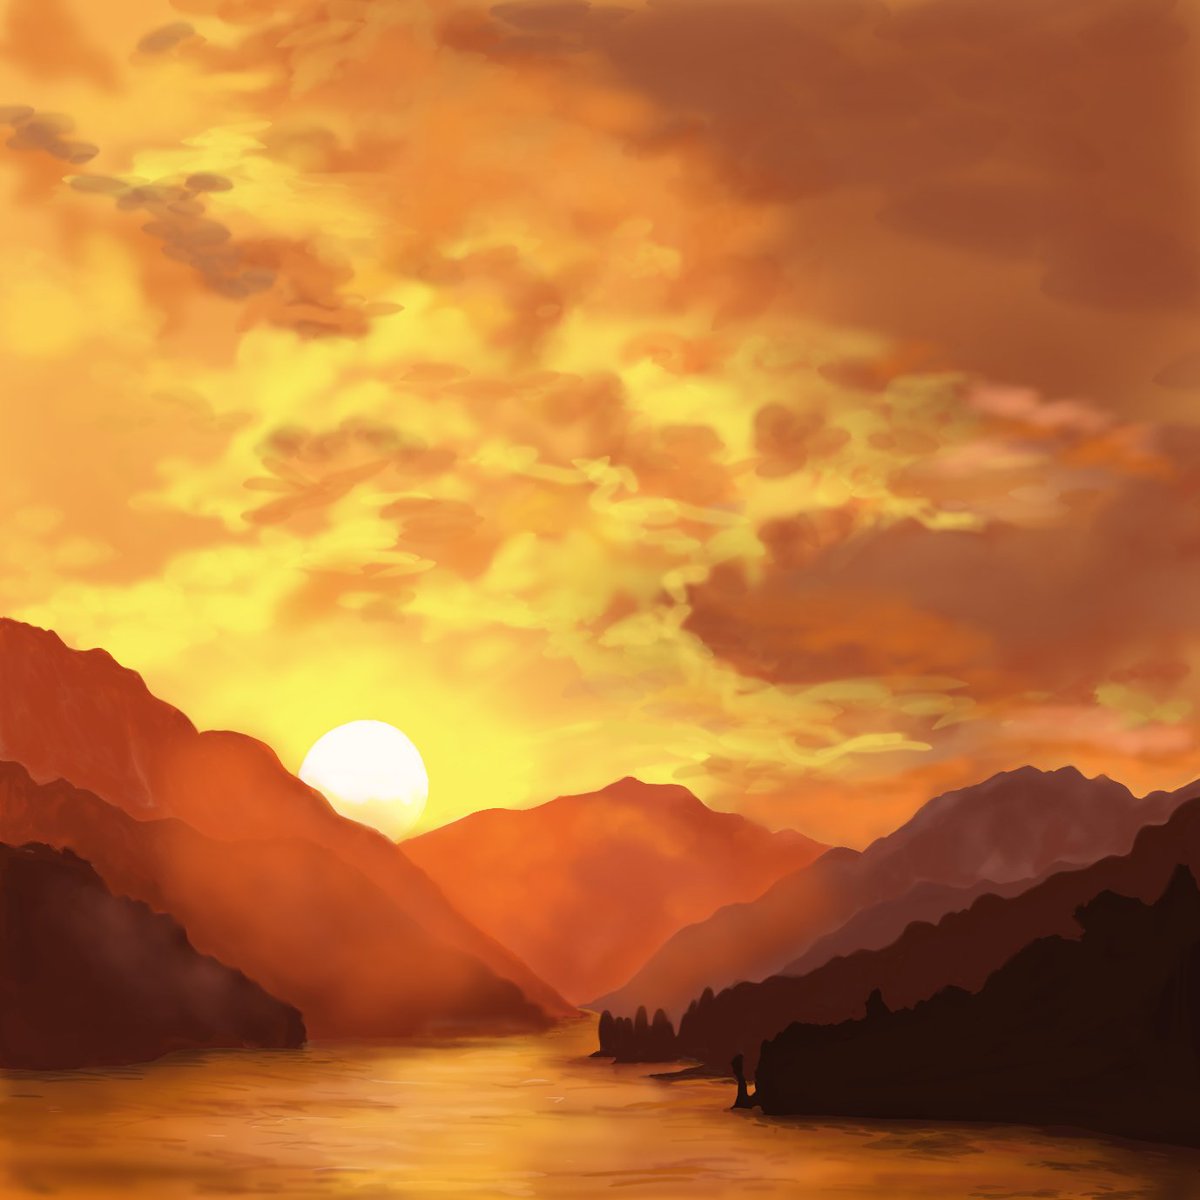 ギガマック 私が大好きな夏の夕焼け空とヒグラシの鳴き声の情景です 日没 夕焼け 夏 イラスト イラスト王国 イラスト好きな人と繋がりたい 絵描き屋 デジタルイラスト